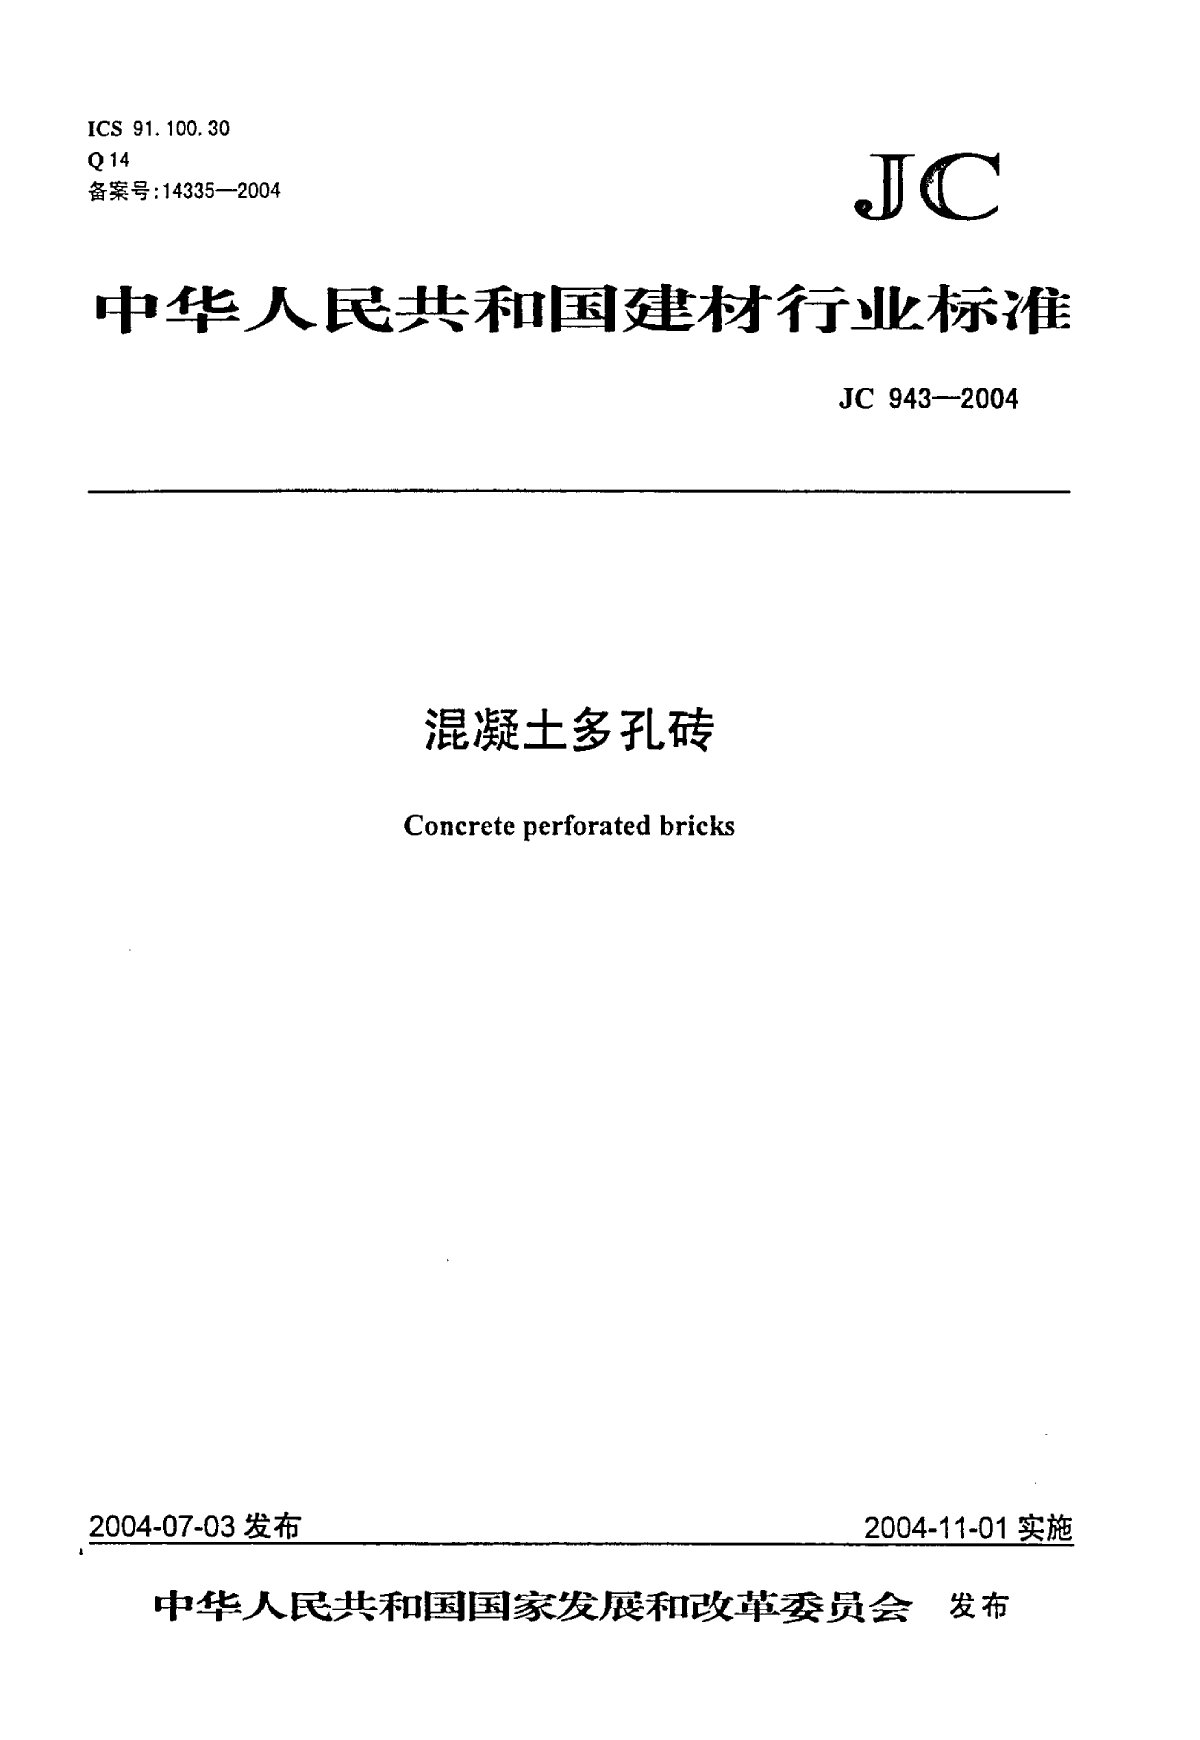 混凝土多孔砖JC943-2004.pdf